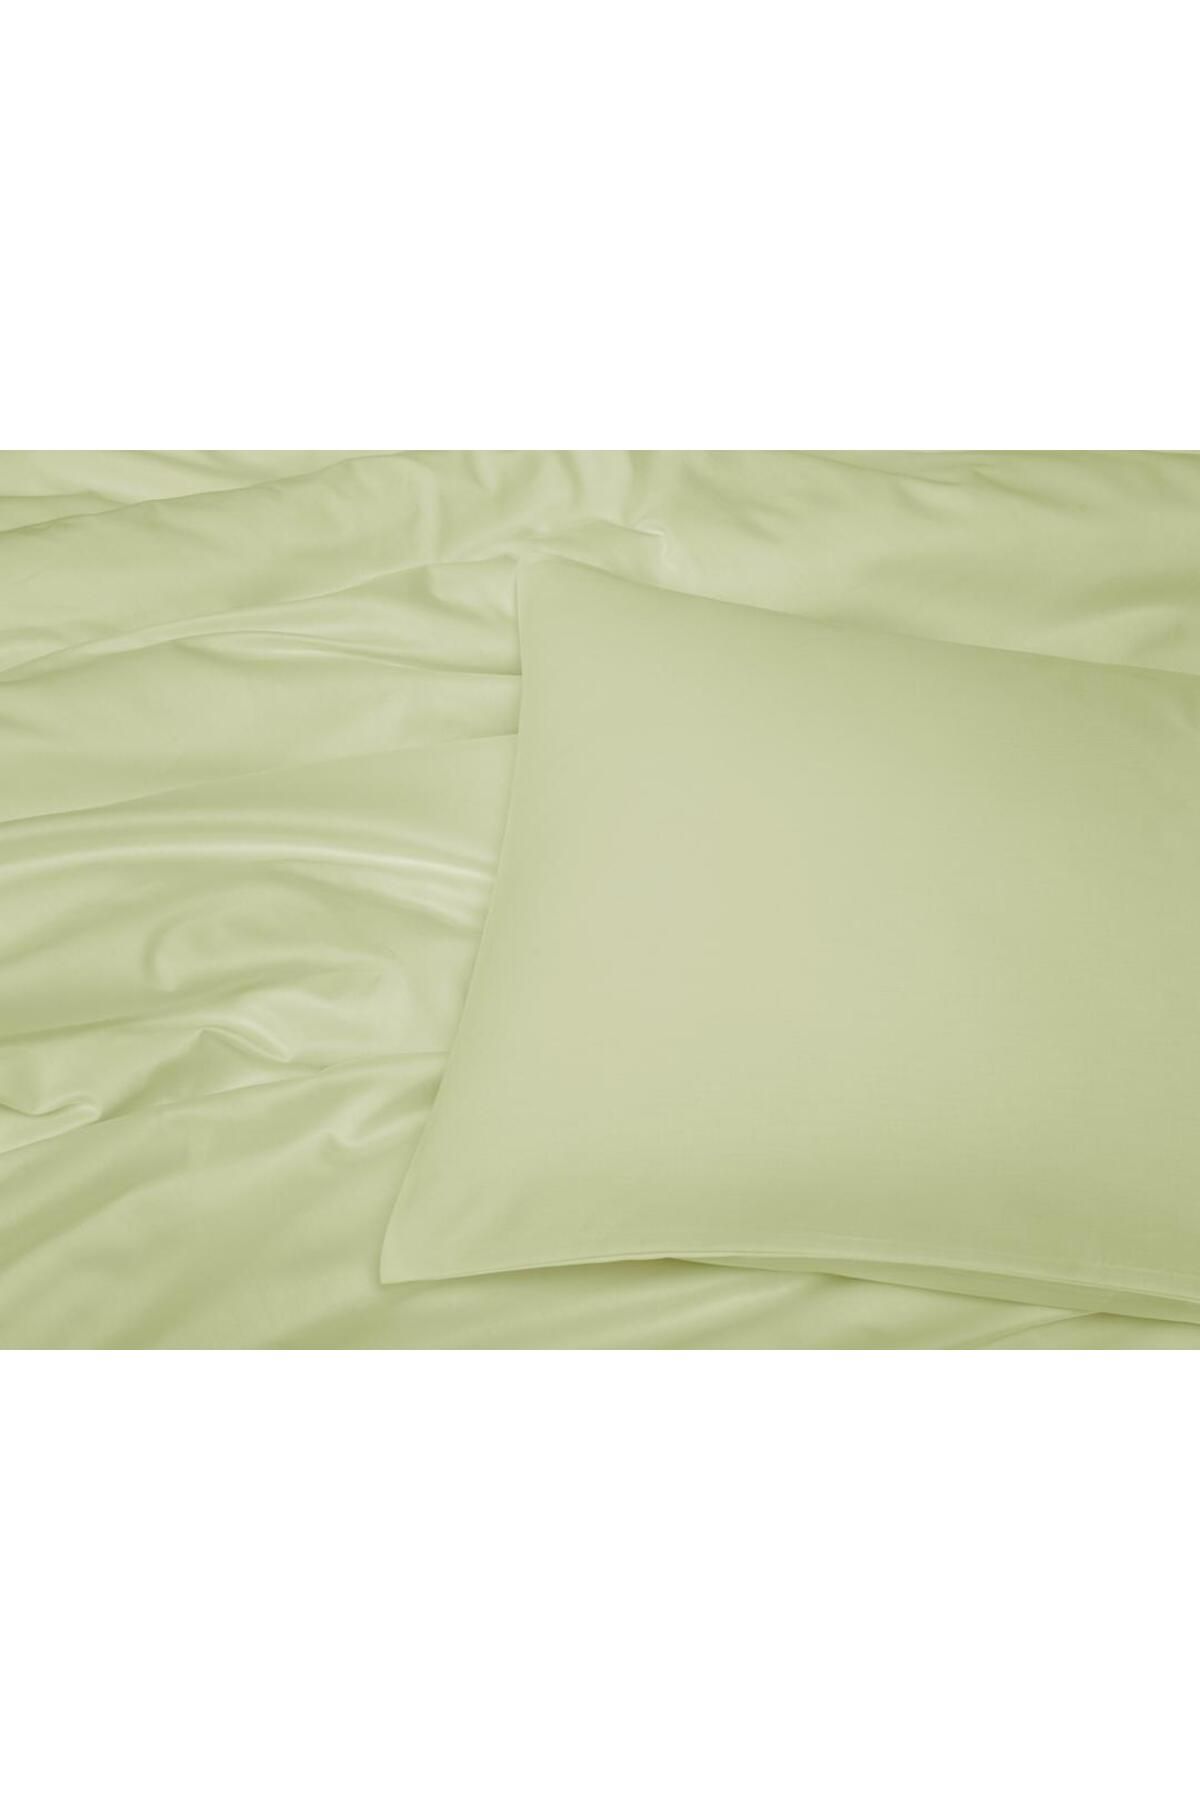 ToWell Home Comfort Collection %100 Pamuk Saten Tek Kişilik Terletmeyen Nevresim Seti (160 cm x 220 cm)